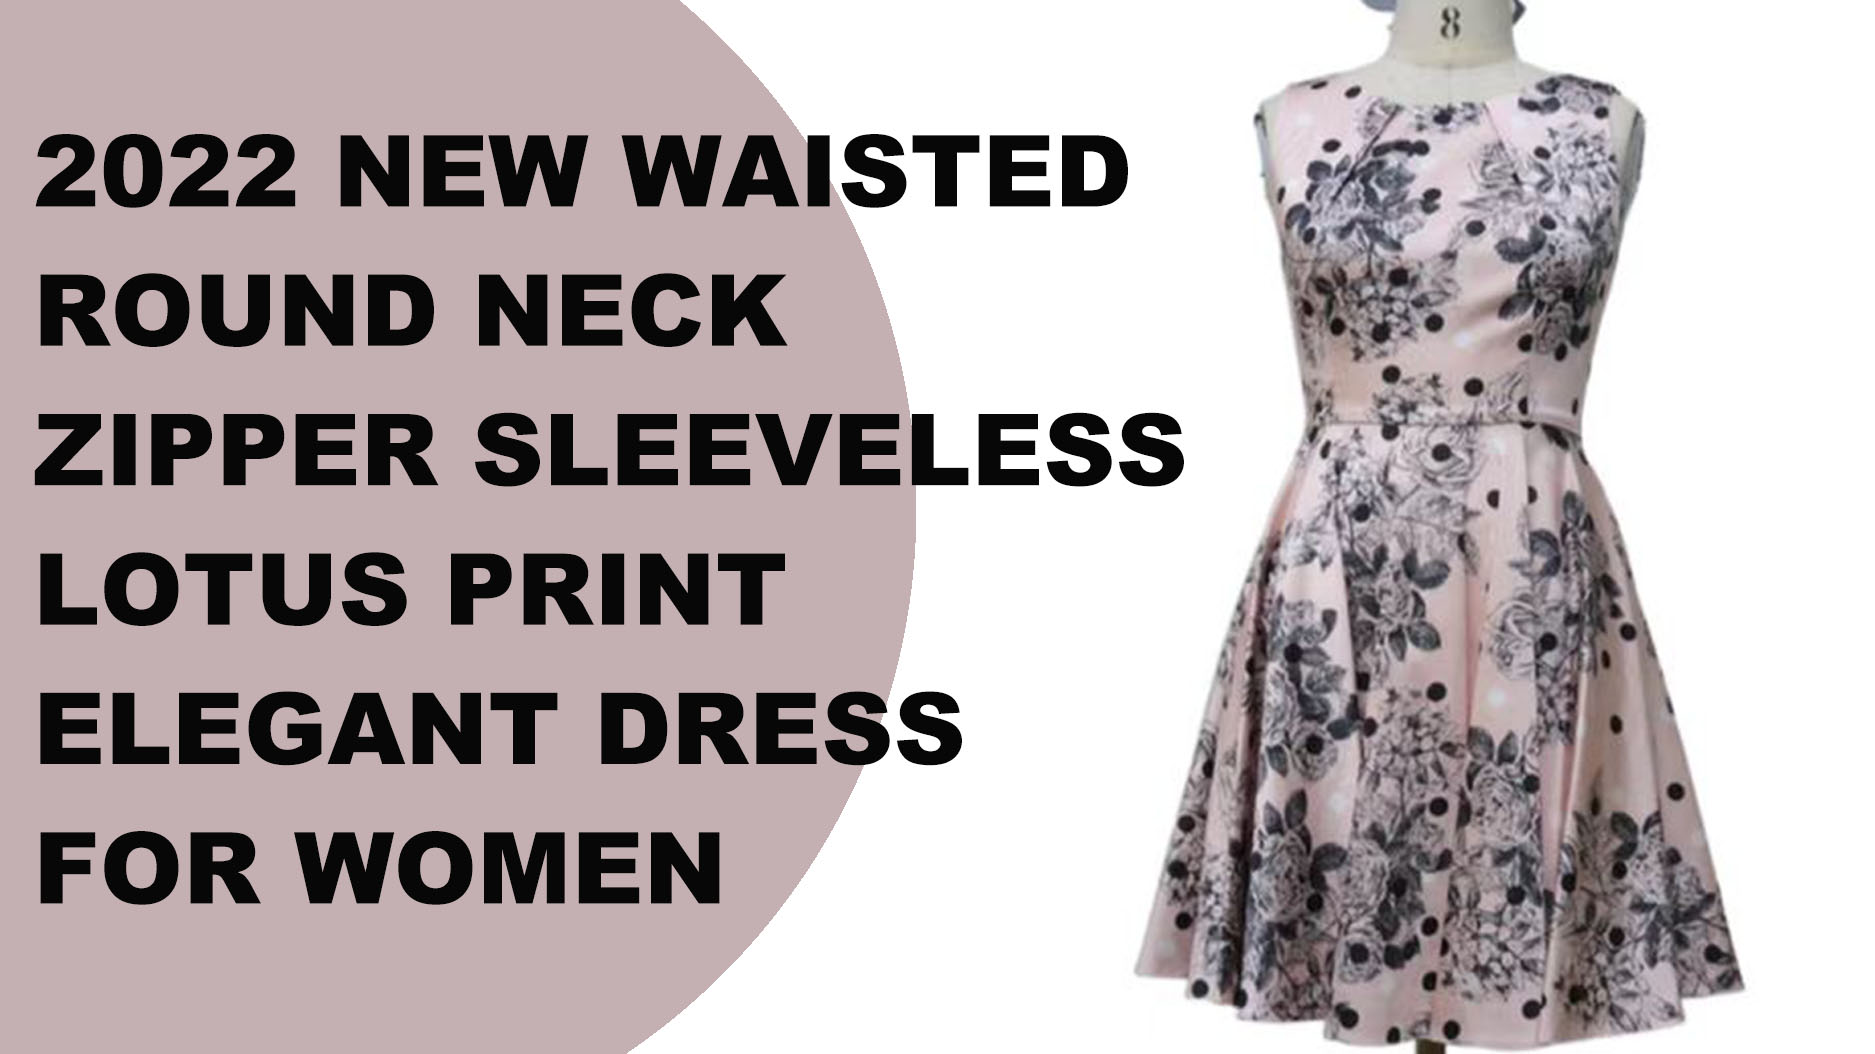 2022 Նոր գոտկատեղով, կլոր վզով կայծակաճարմանդ, լոտոսի պրինտով անթև կանացի զգեստ